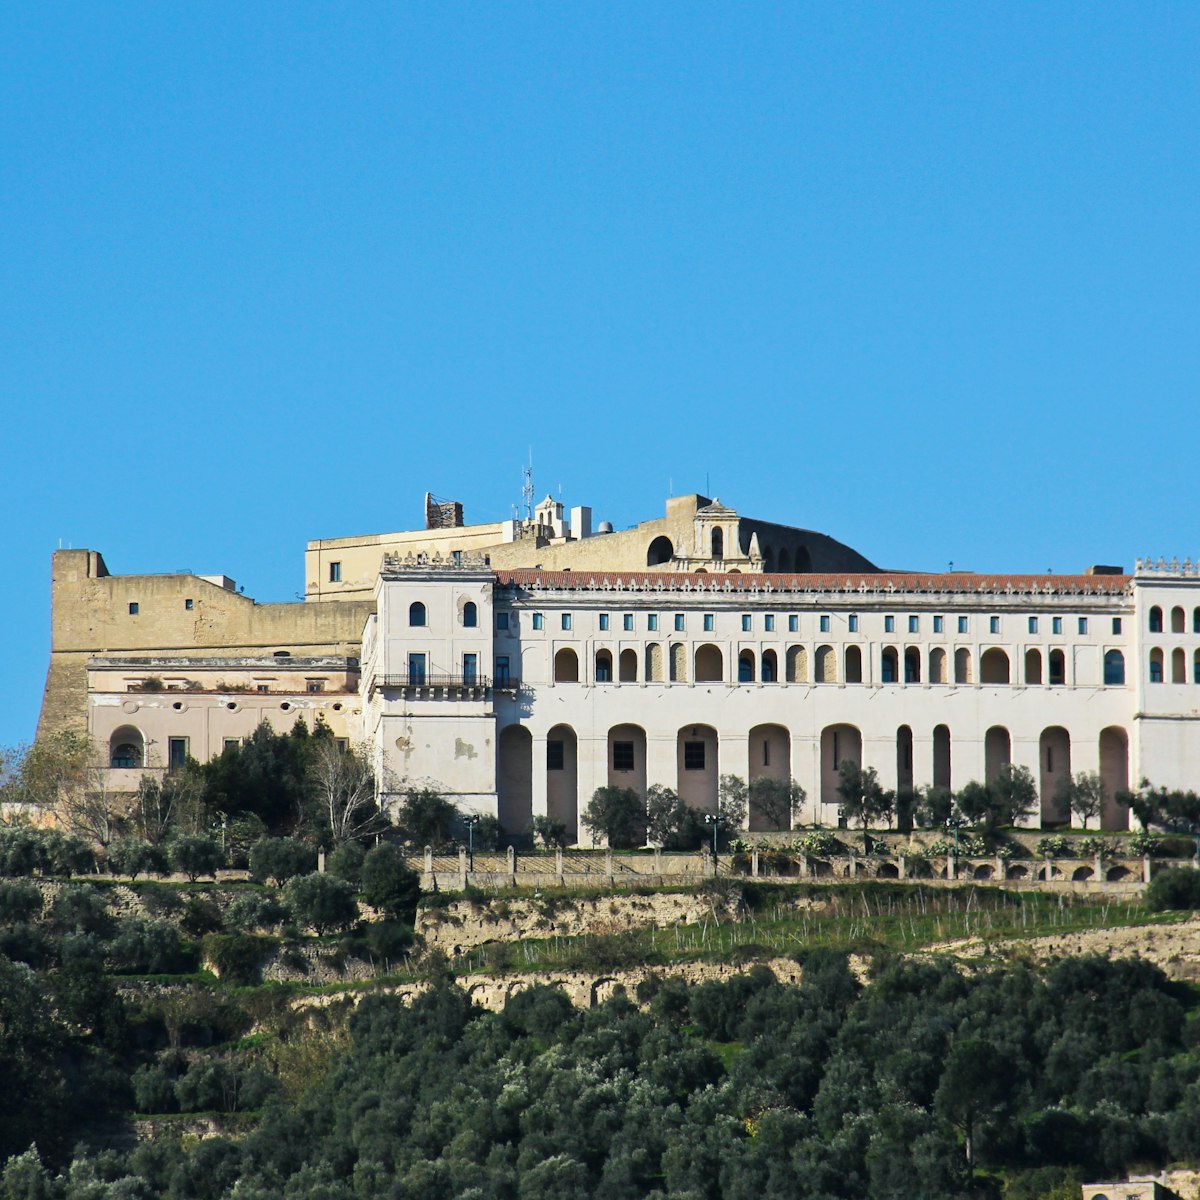 Castel Sant'Elmo in Naples nea Certosa di San Martino.